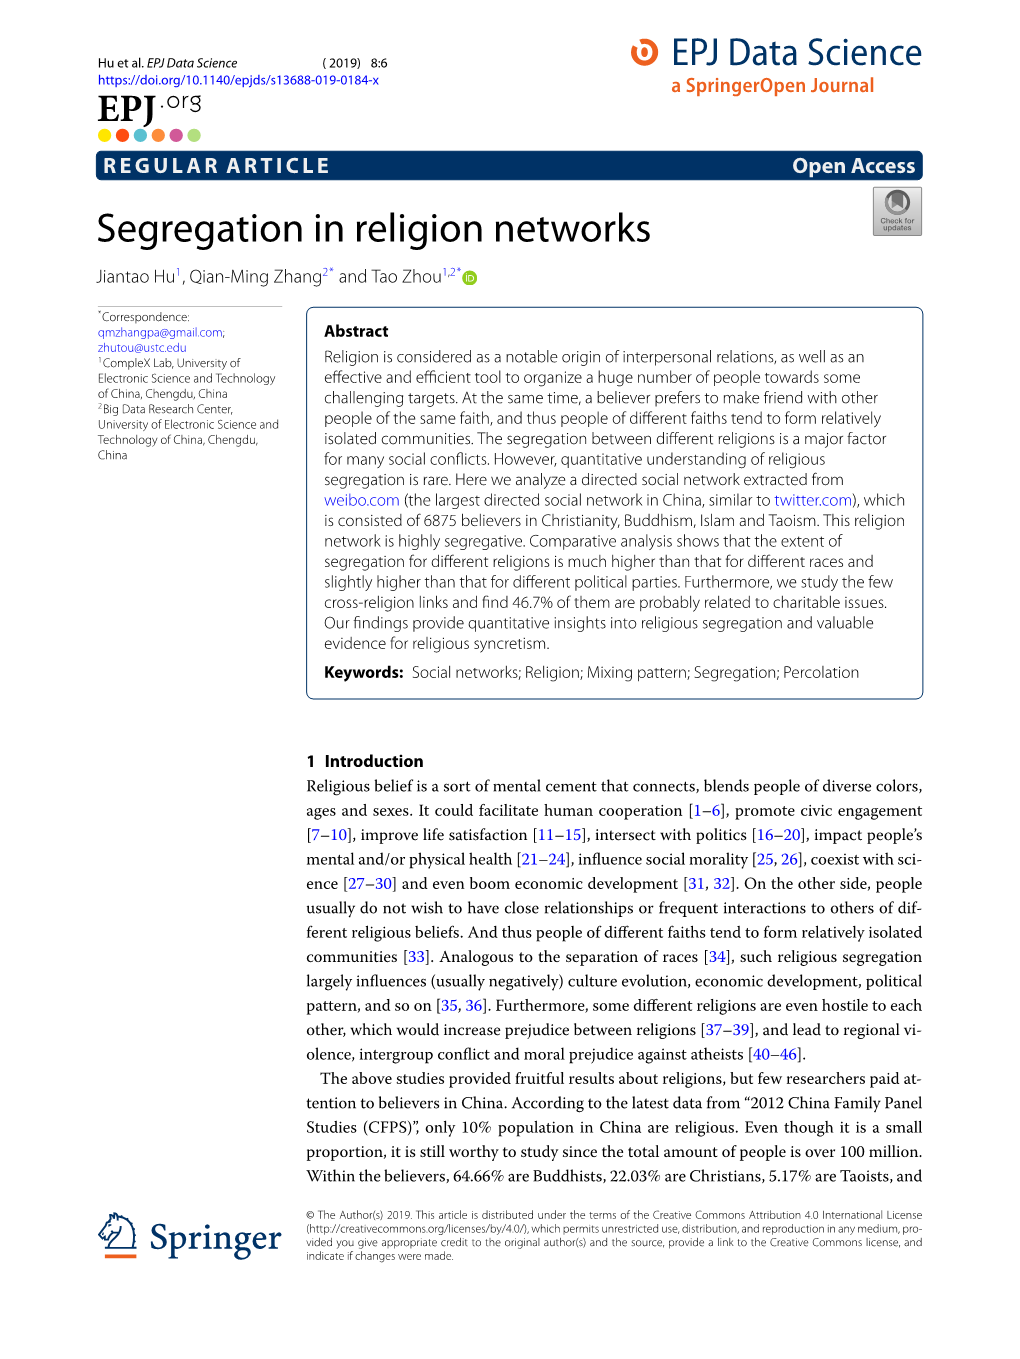 Segregation in Religion Networks Jiantao Hu1, Qian-Ming Zhang2* and Tao Zhou1,2*